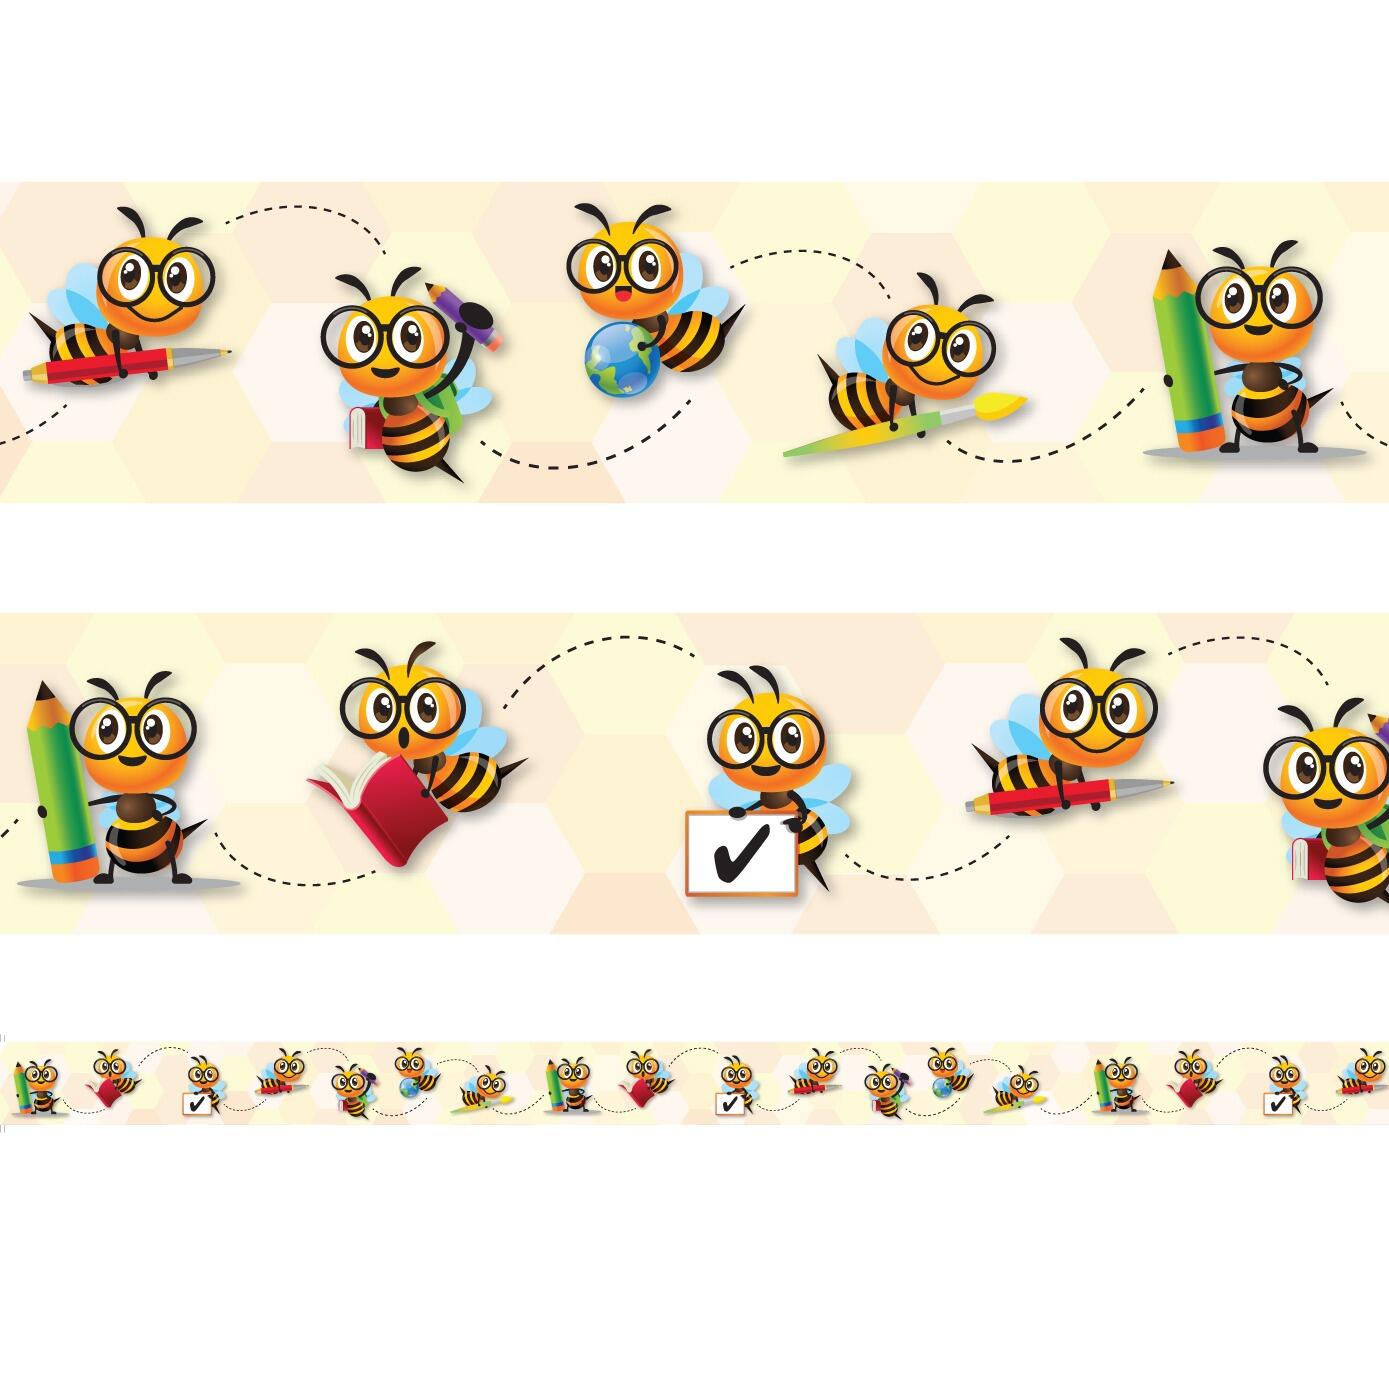 Bordures d'Affichages Classe | Motif Abeille Amusante (Busy Bee) Bordures Décoratives - 12 Mètres